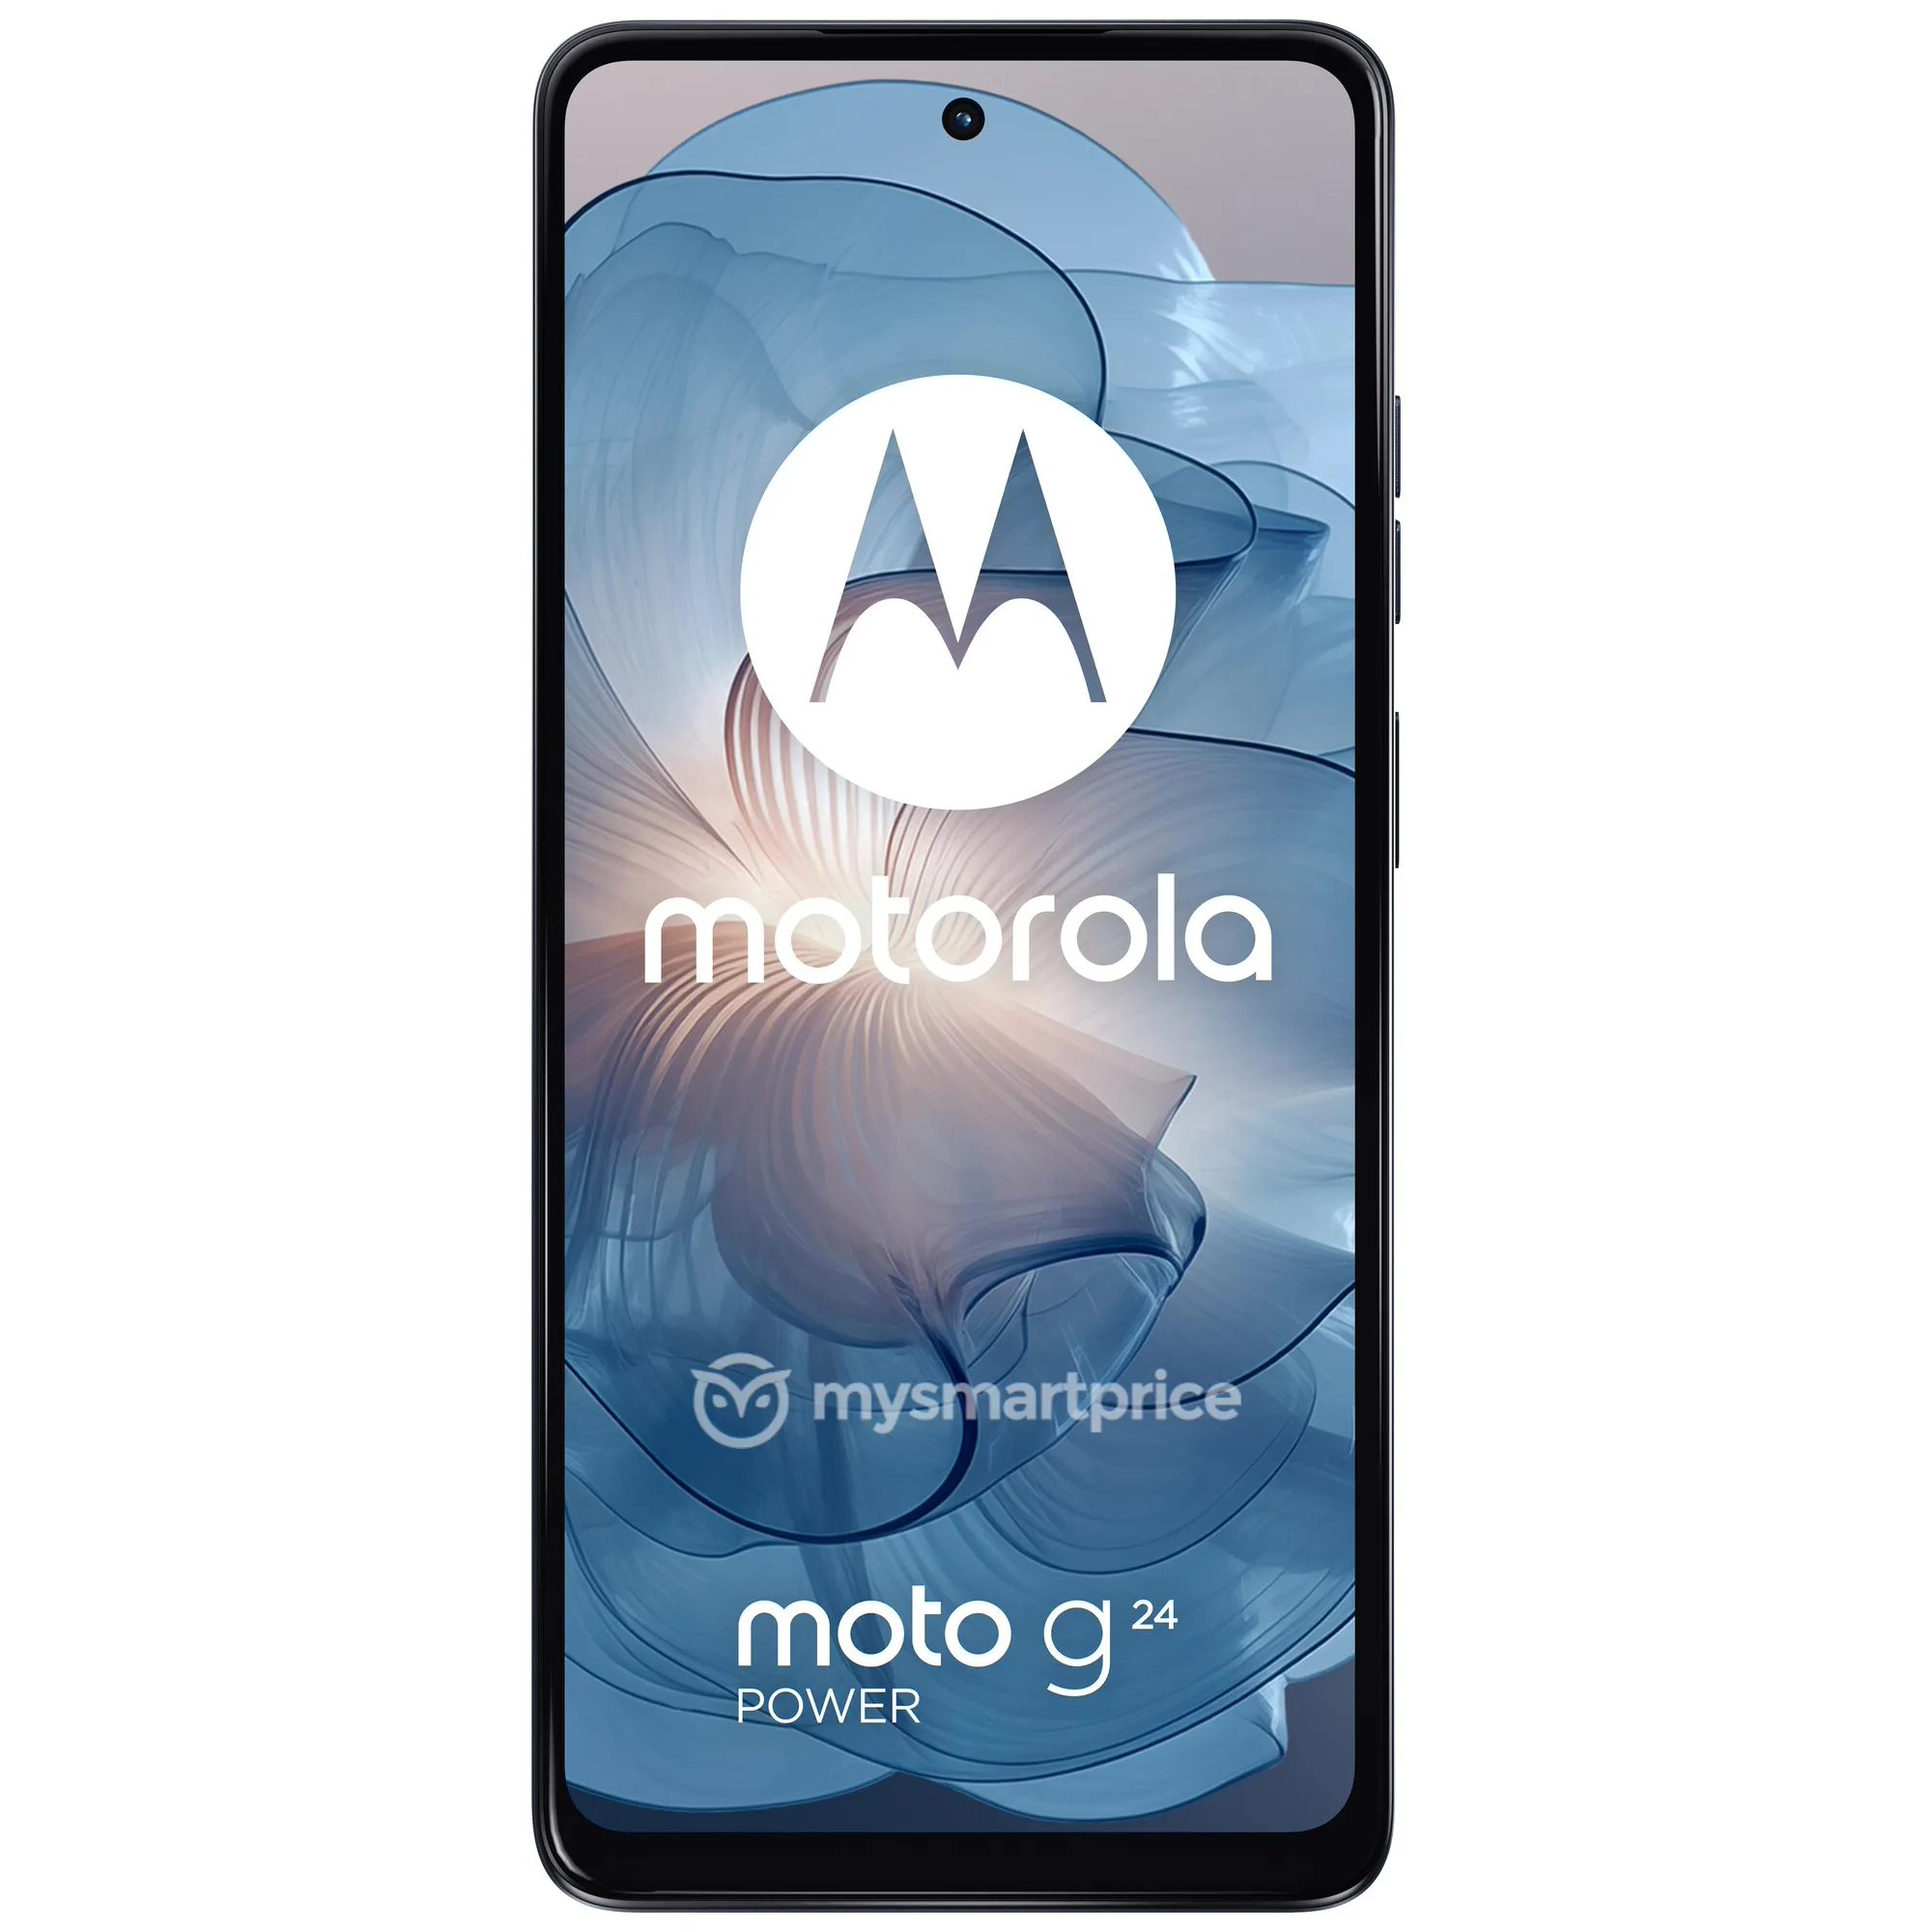 摩托罗拉 Moto G24 Power 手机渲染图曝光